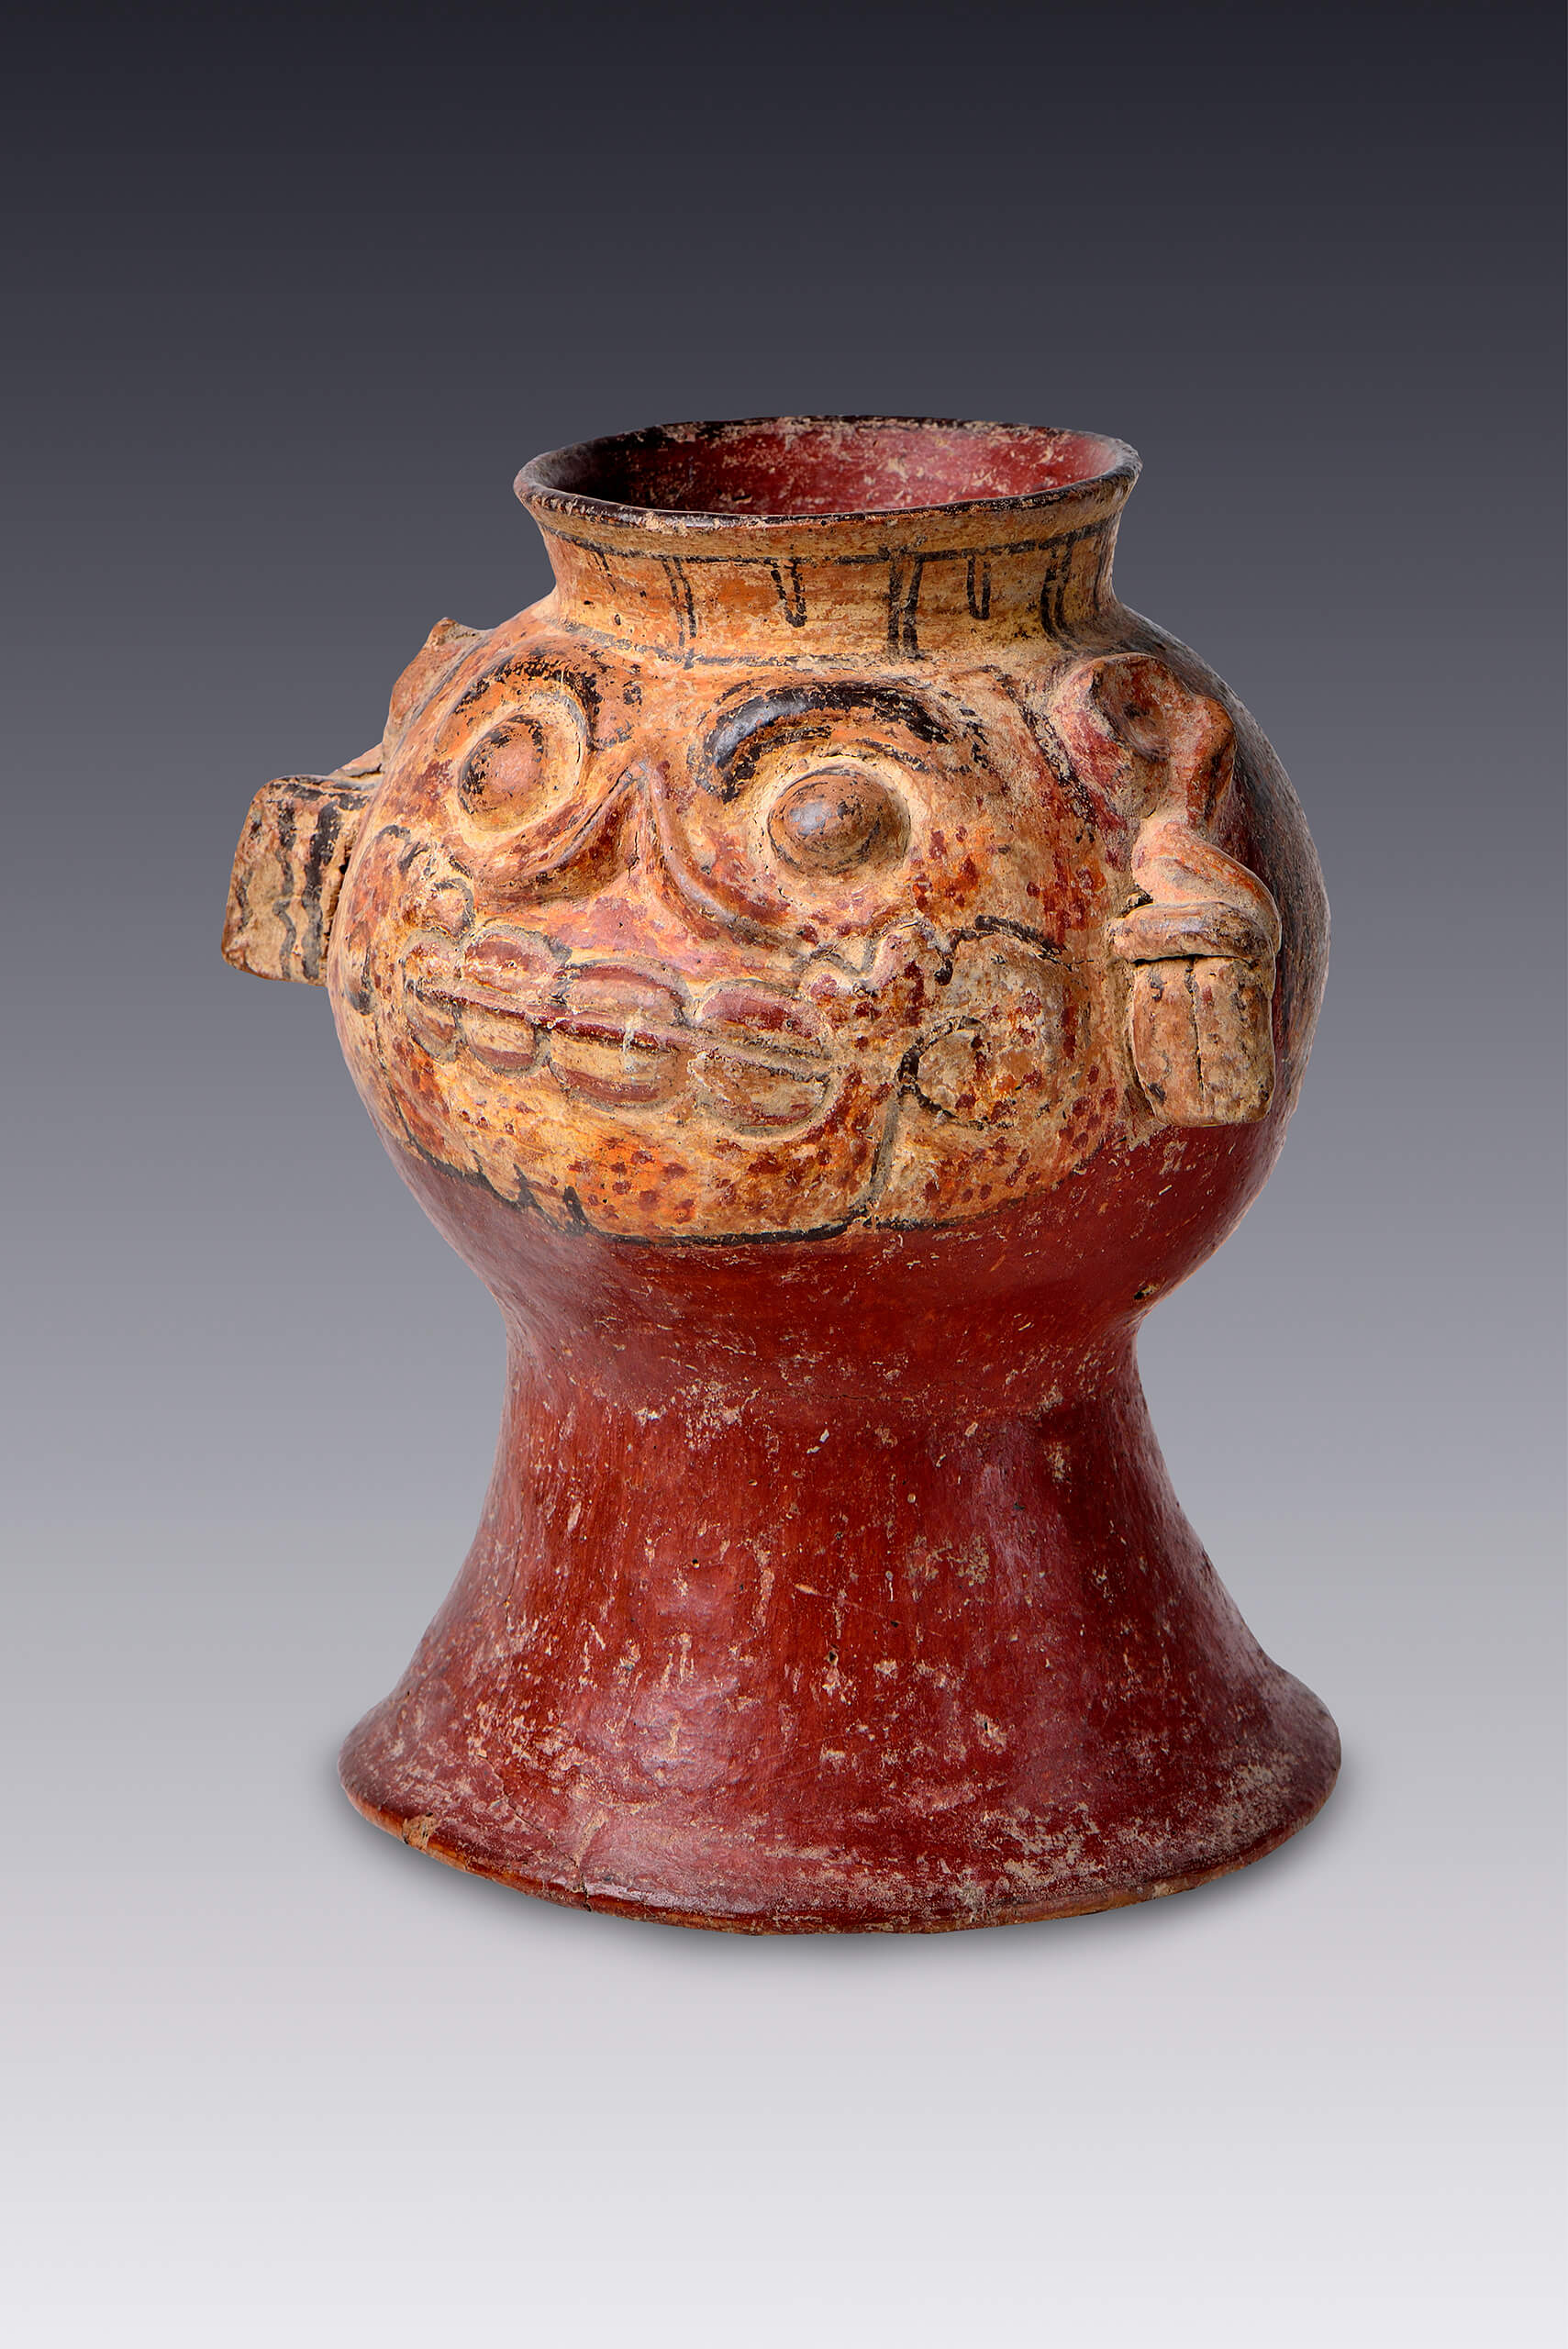 Vasija con forma de cráneo | El México antiguo. Salas de Arte Prehispánico | Museo Amparo, Puebla